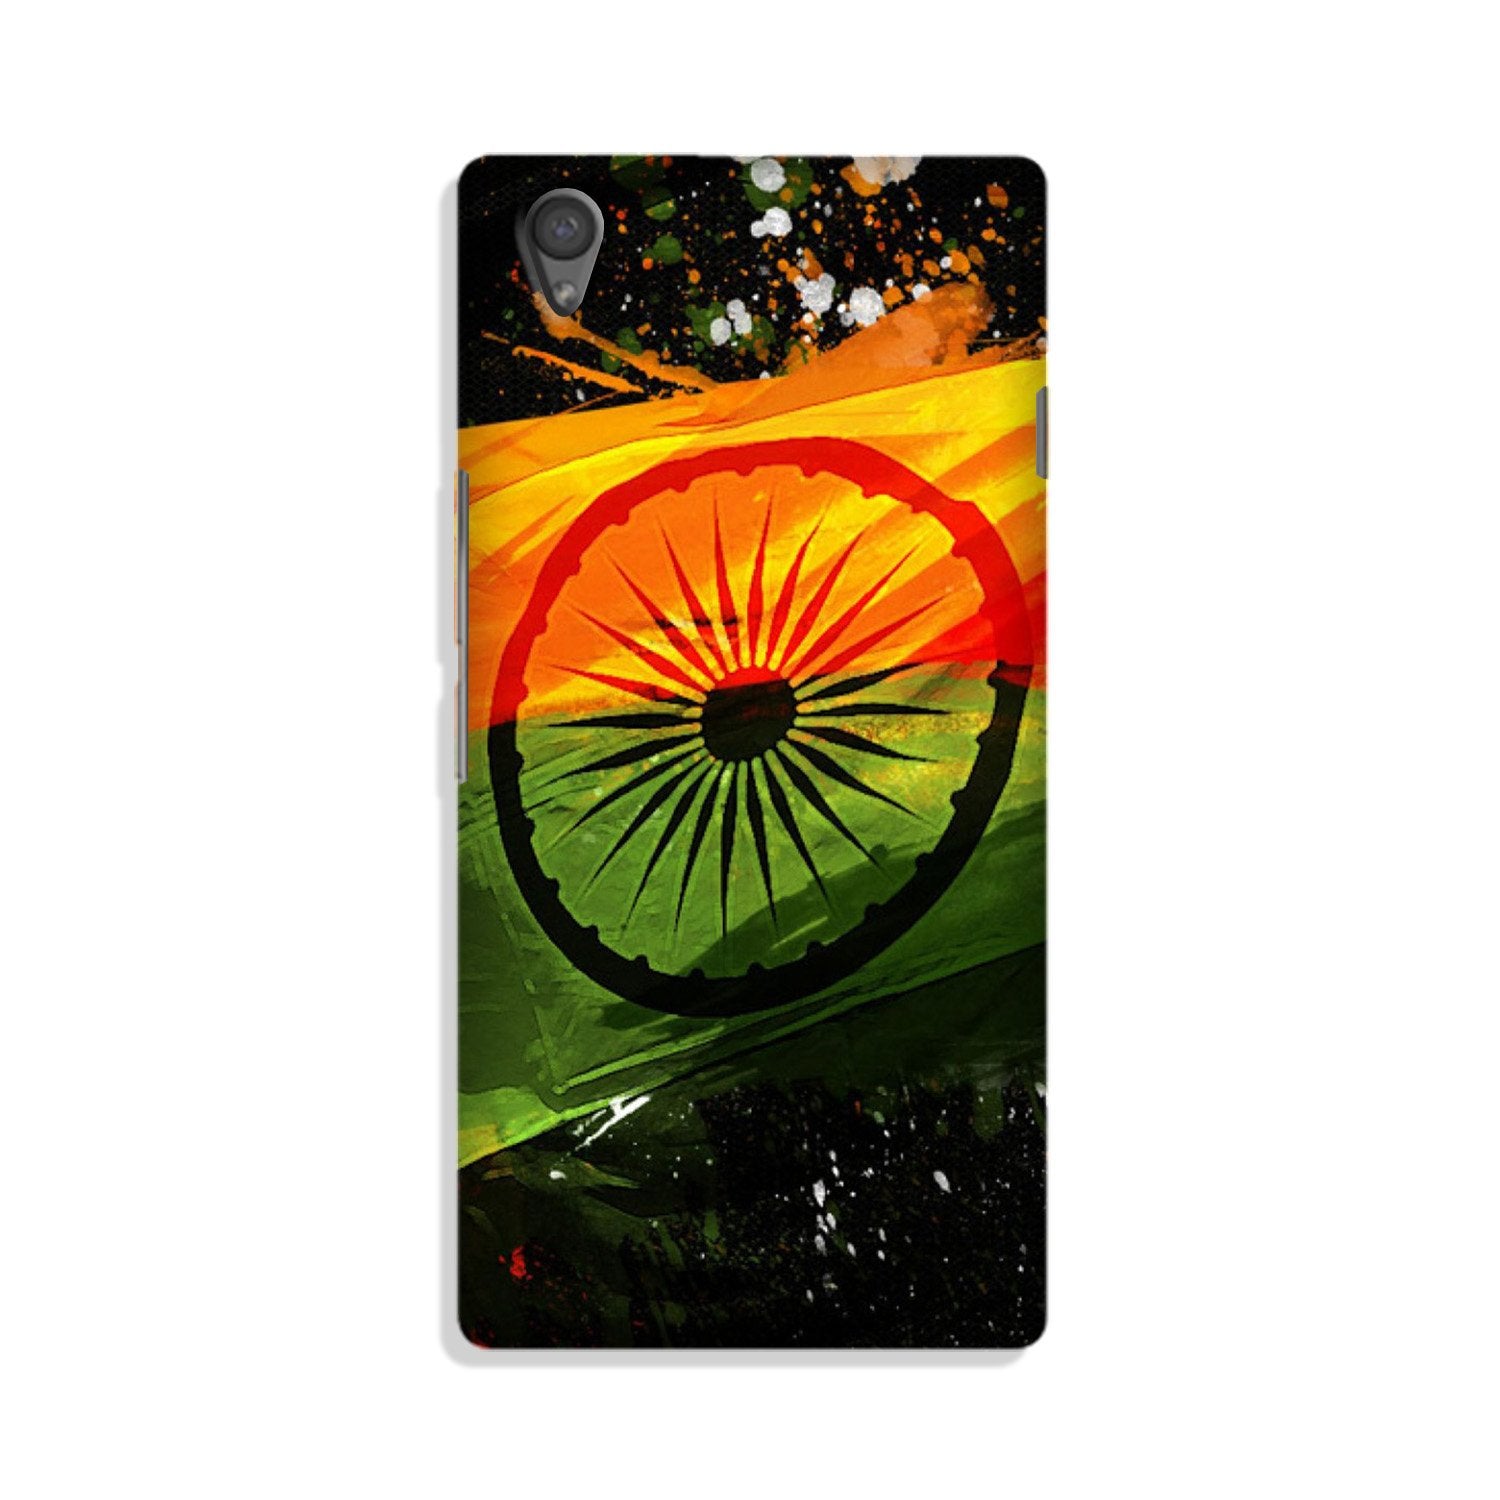 Indian Flag Case for Vivo Y51L(Design - 137)